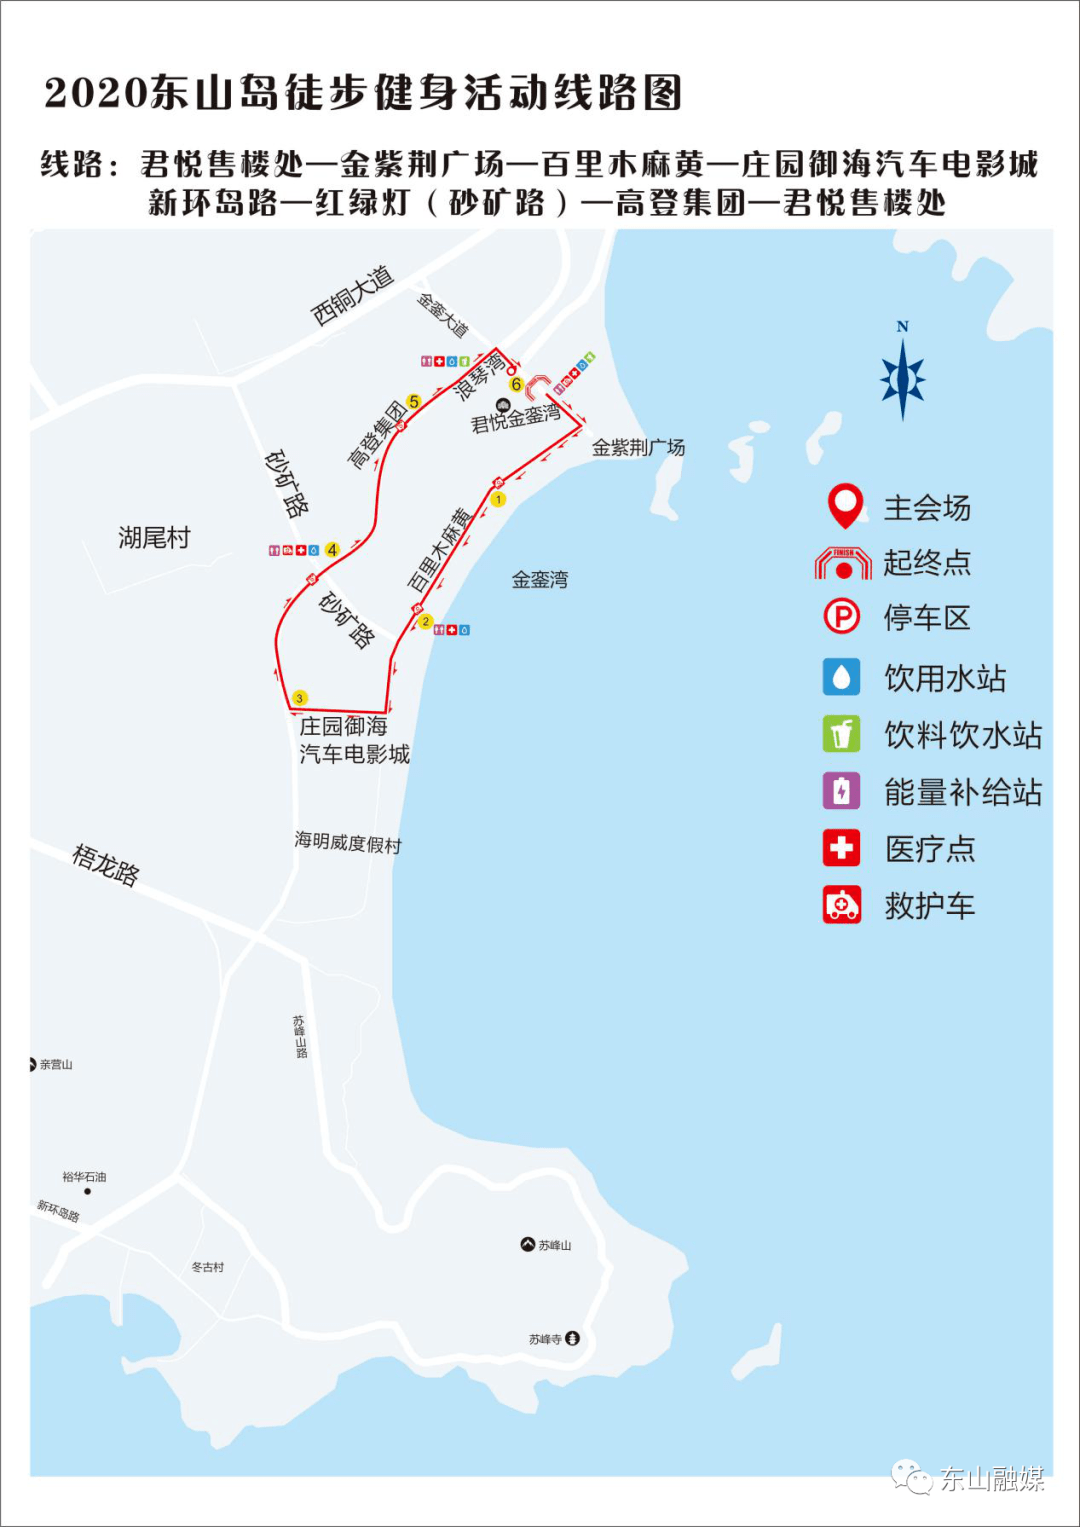 明天经过东山这里的注意2020东山岛徒步健身活动交通管制通告